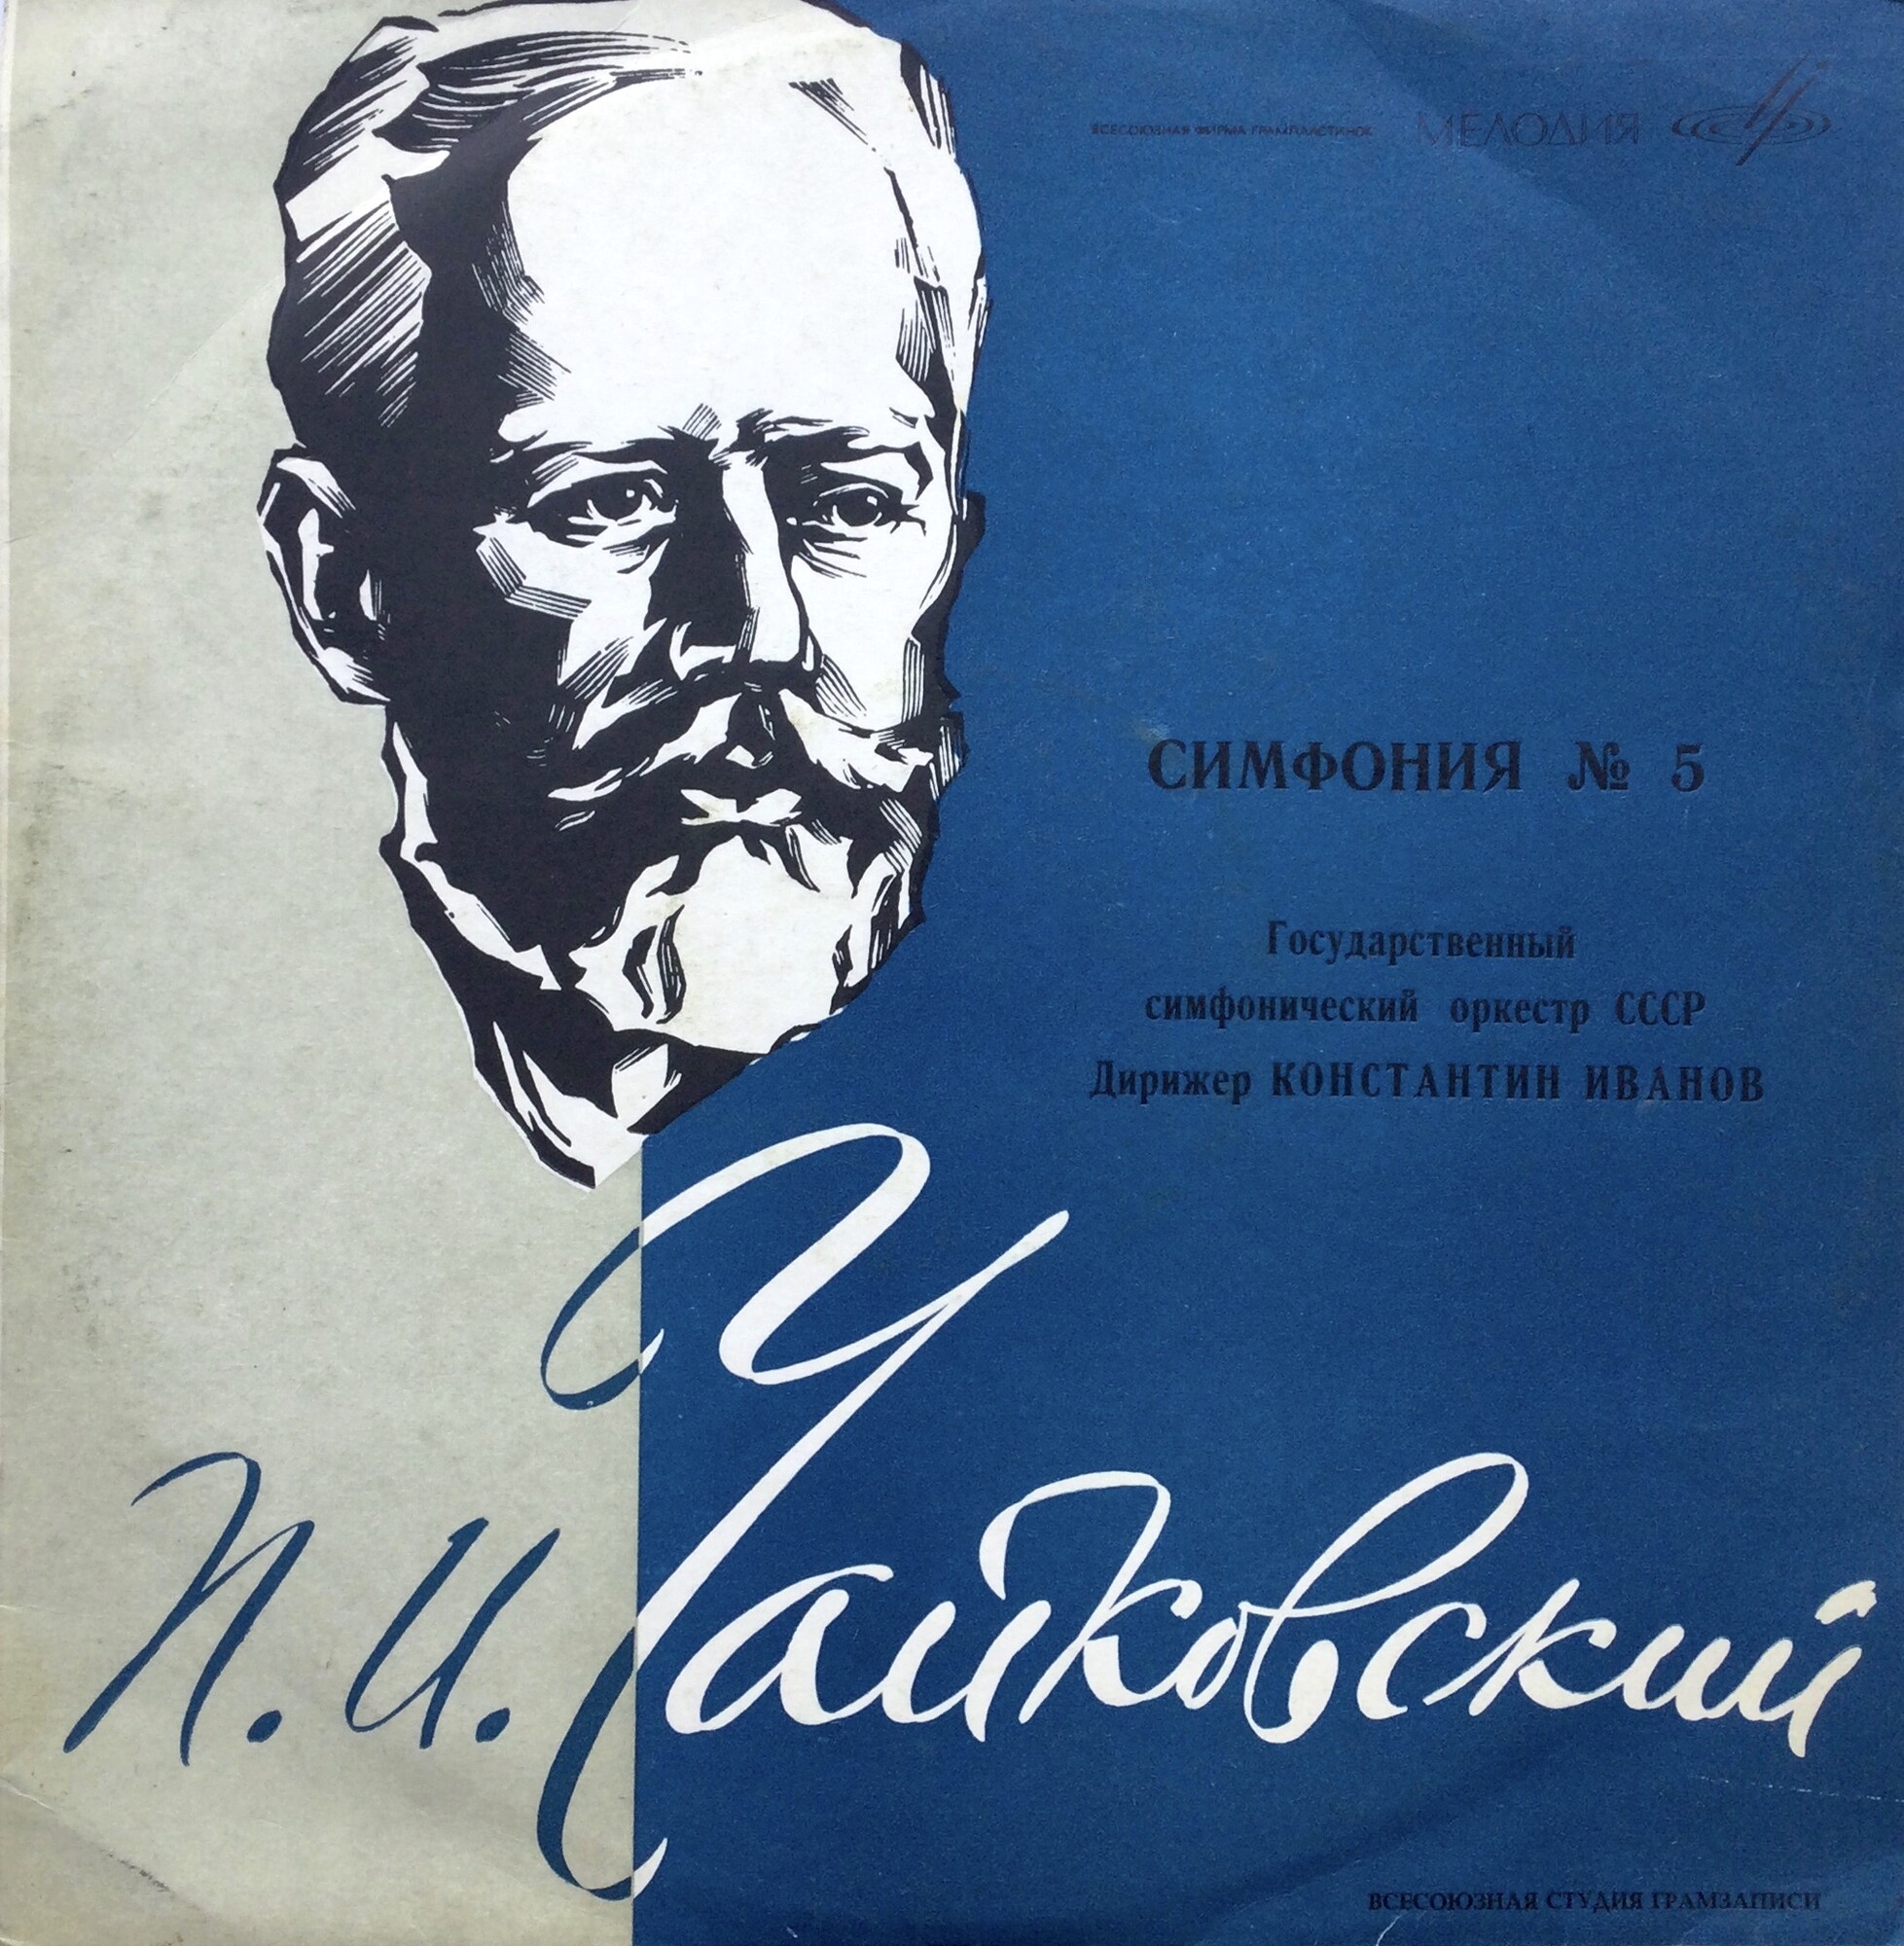 П. Чайковский: Симфония № 5 ми минор, соч. 64 (К. Иванов)